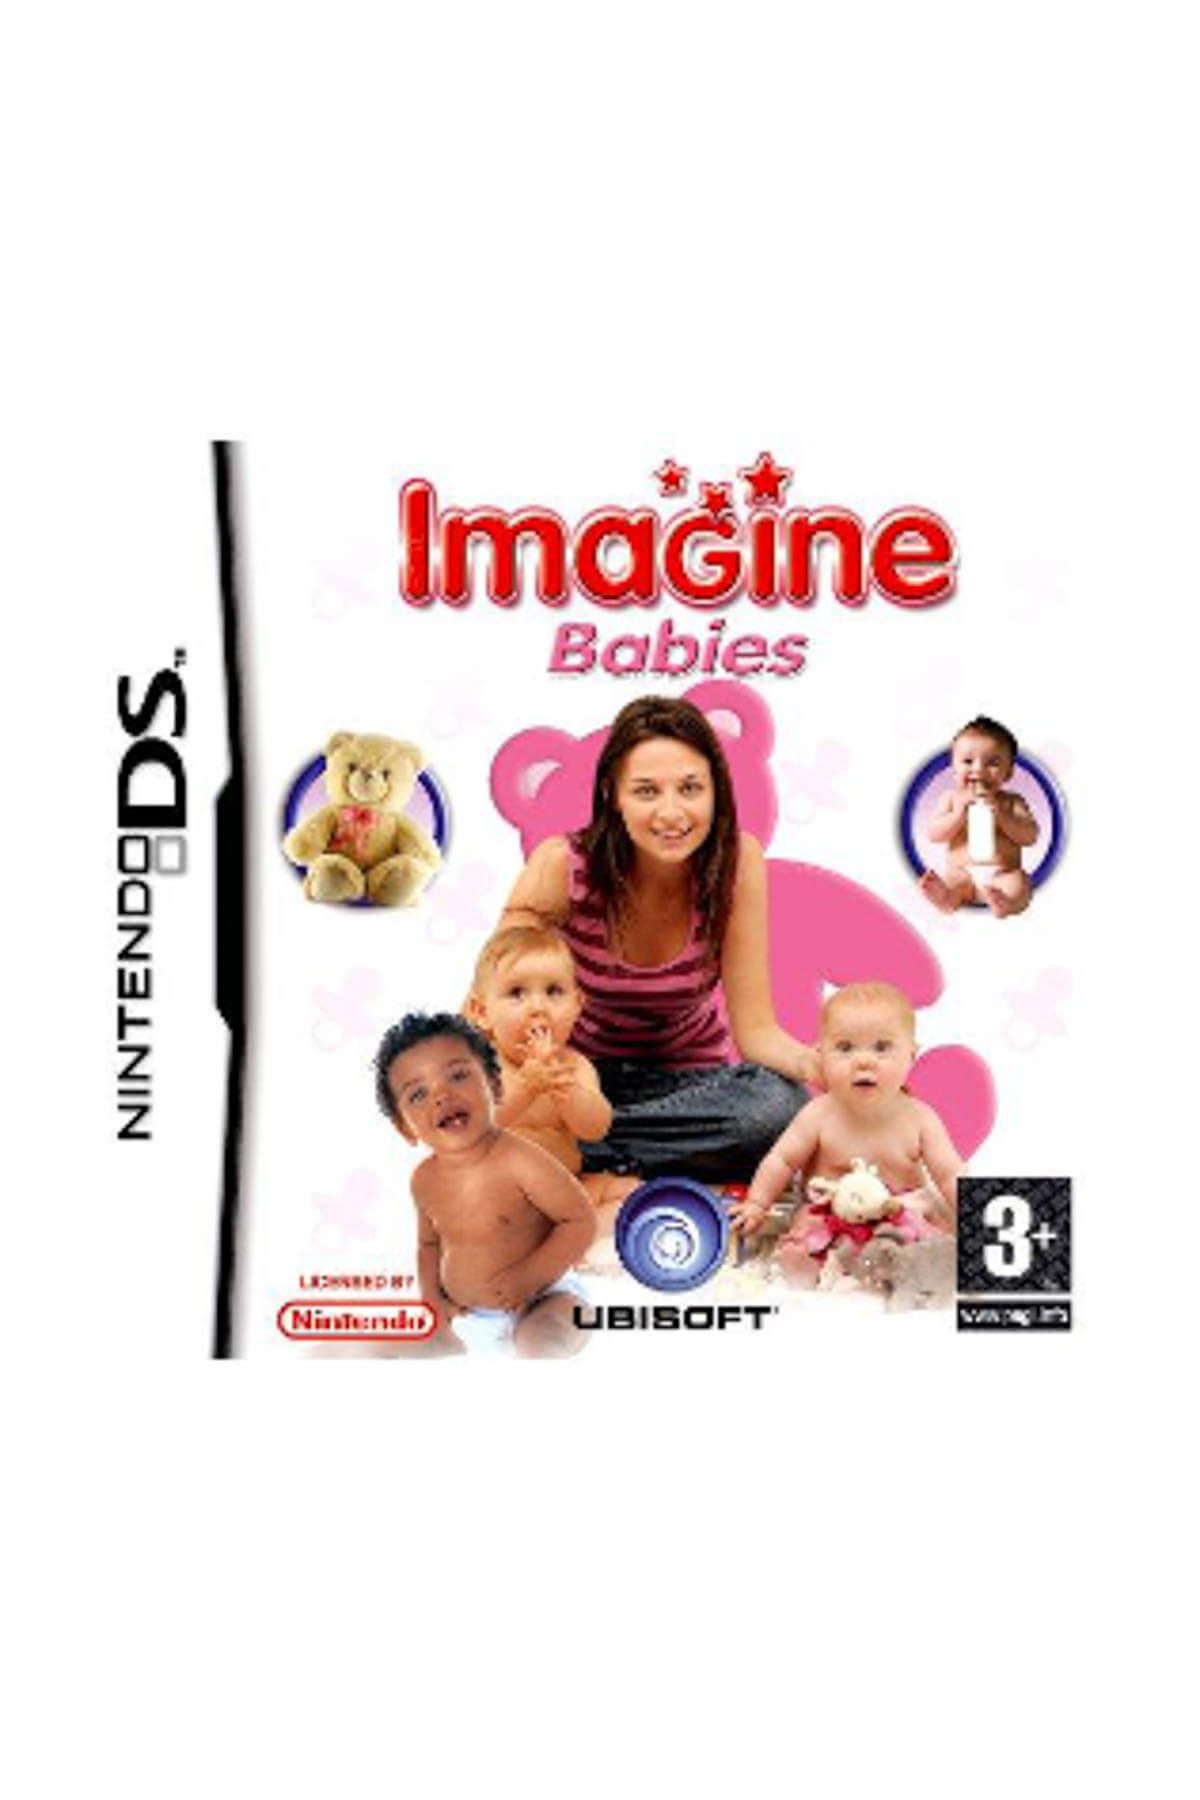 Nintendo Ds imagine Babies